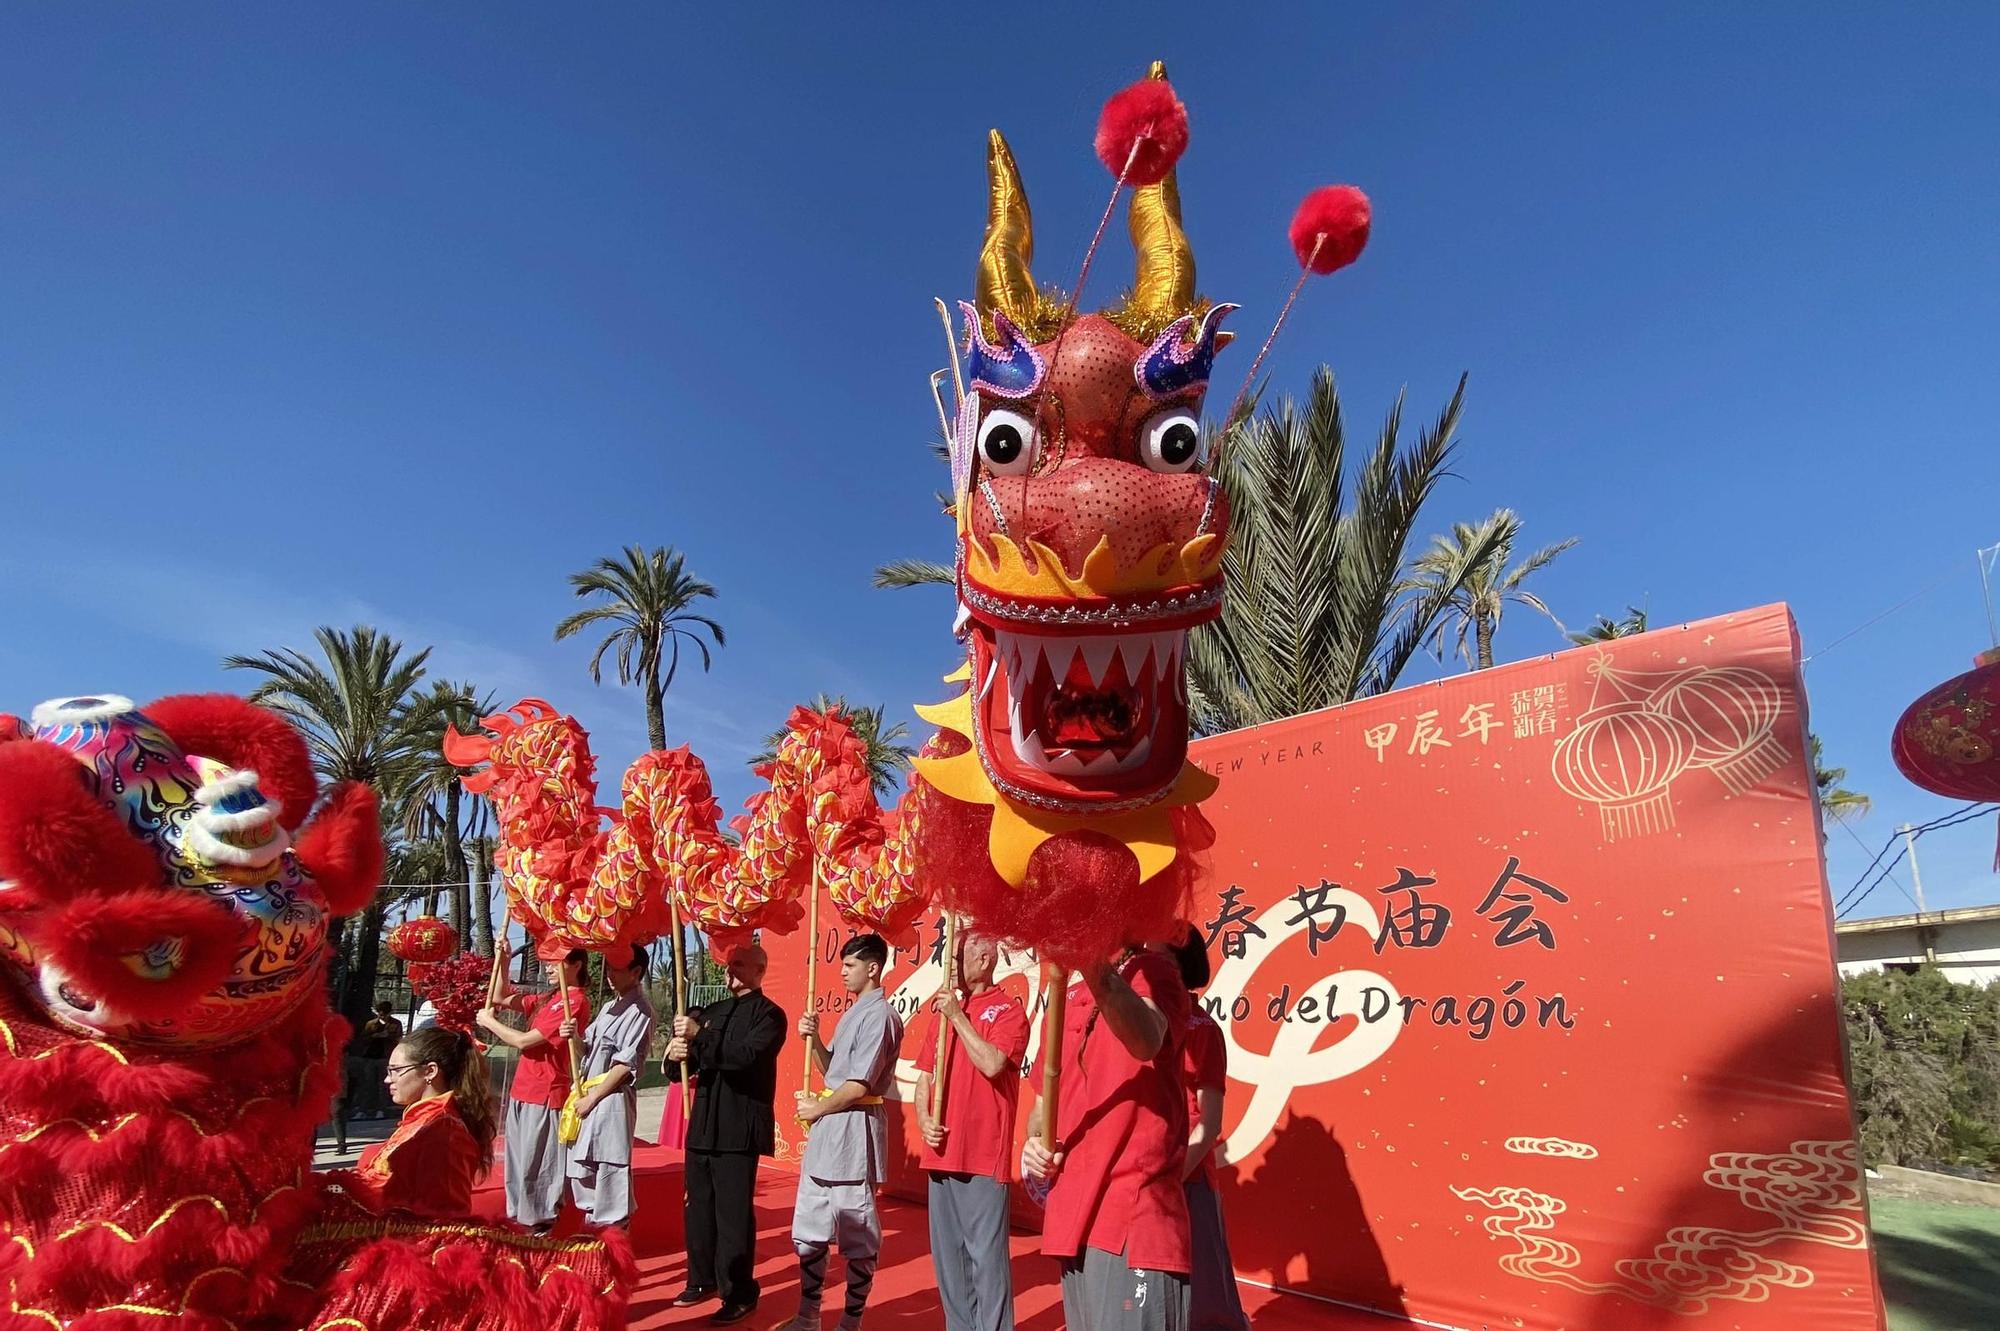 La comunidad china exhibe tradición en Elche por el Año del Dragón